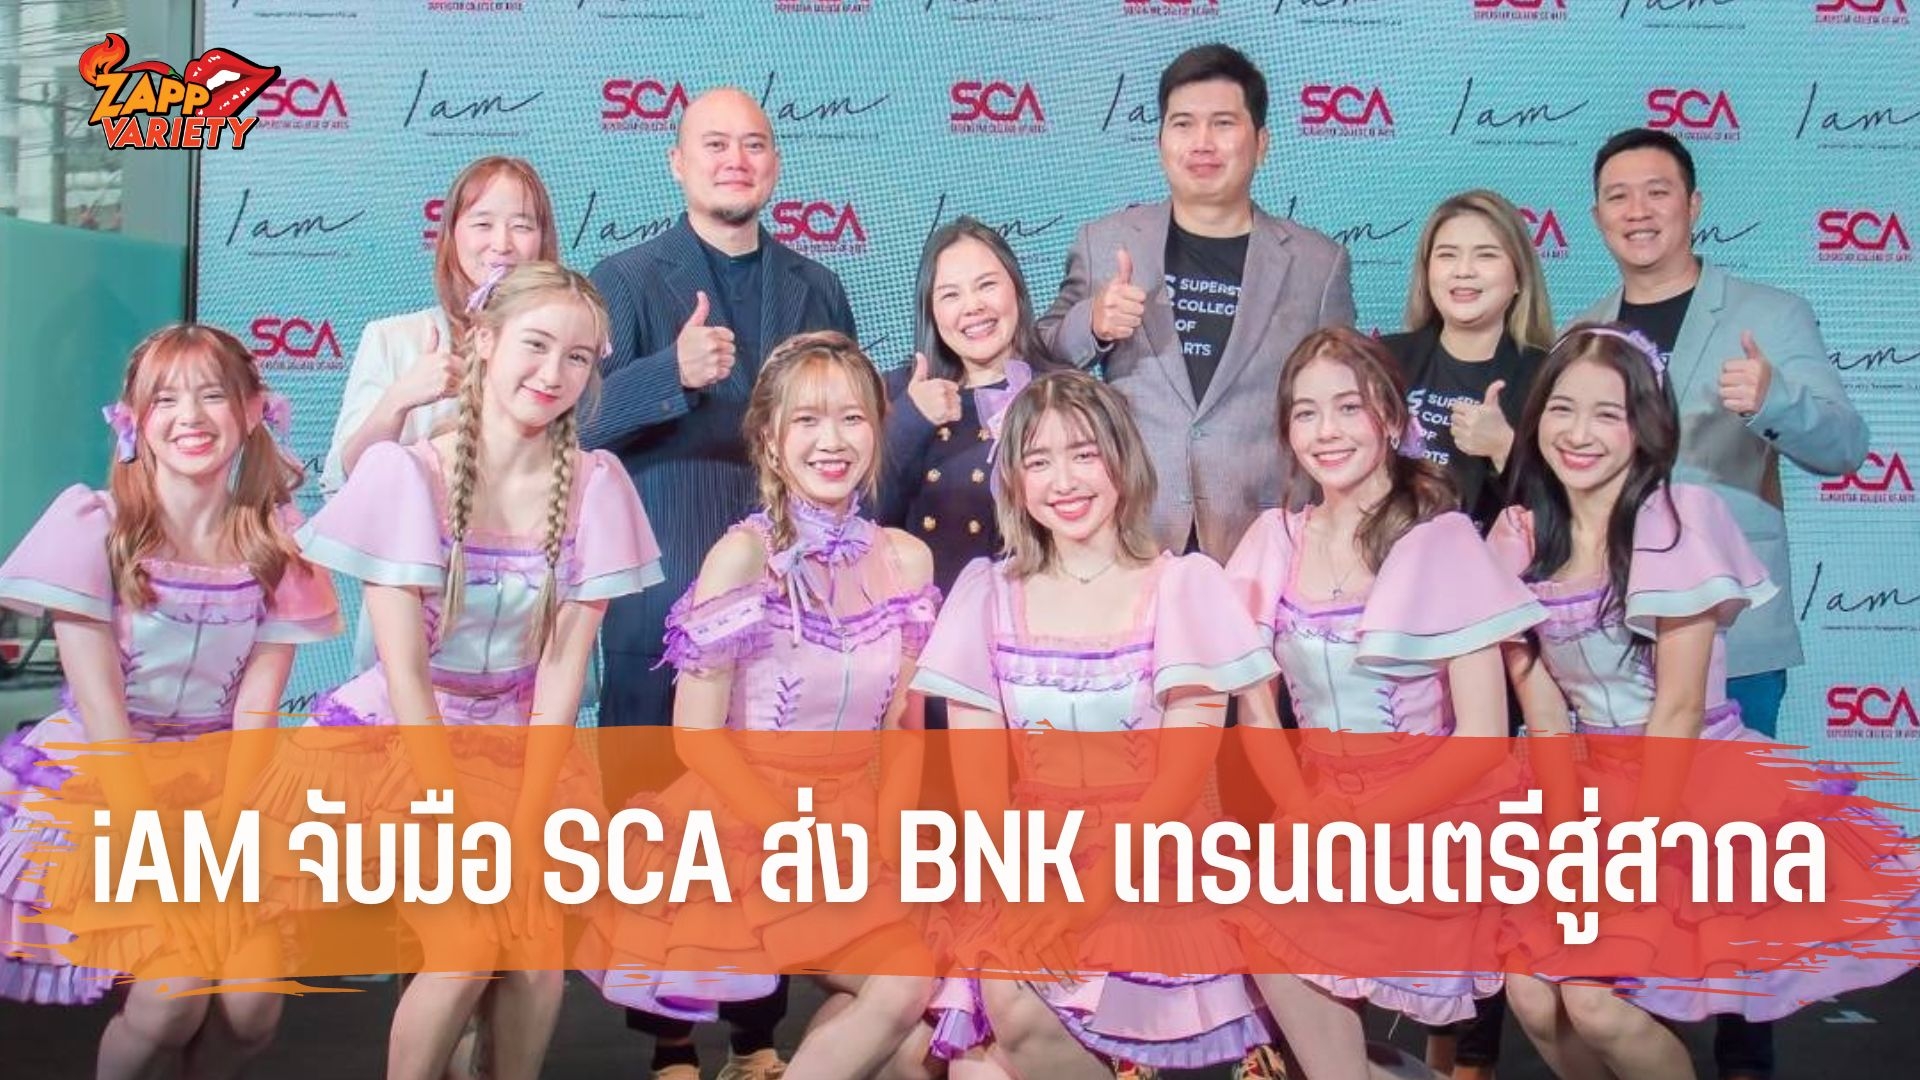 ค่าย iAM จับมือ SCA พลิกโฉมวงการเพลงไทยส่งรุ่น 4 วงไอดอลหญิงวง BNK48  เตรียมเทรนนิ่งทักษะดนตรีศิลปะการแสดงเร่งเครื่องเข้าสู่ตลาดสากล